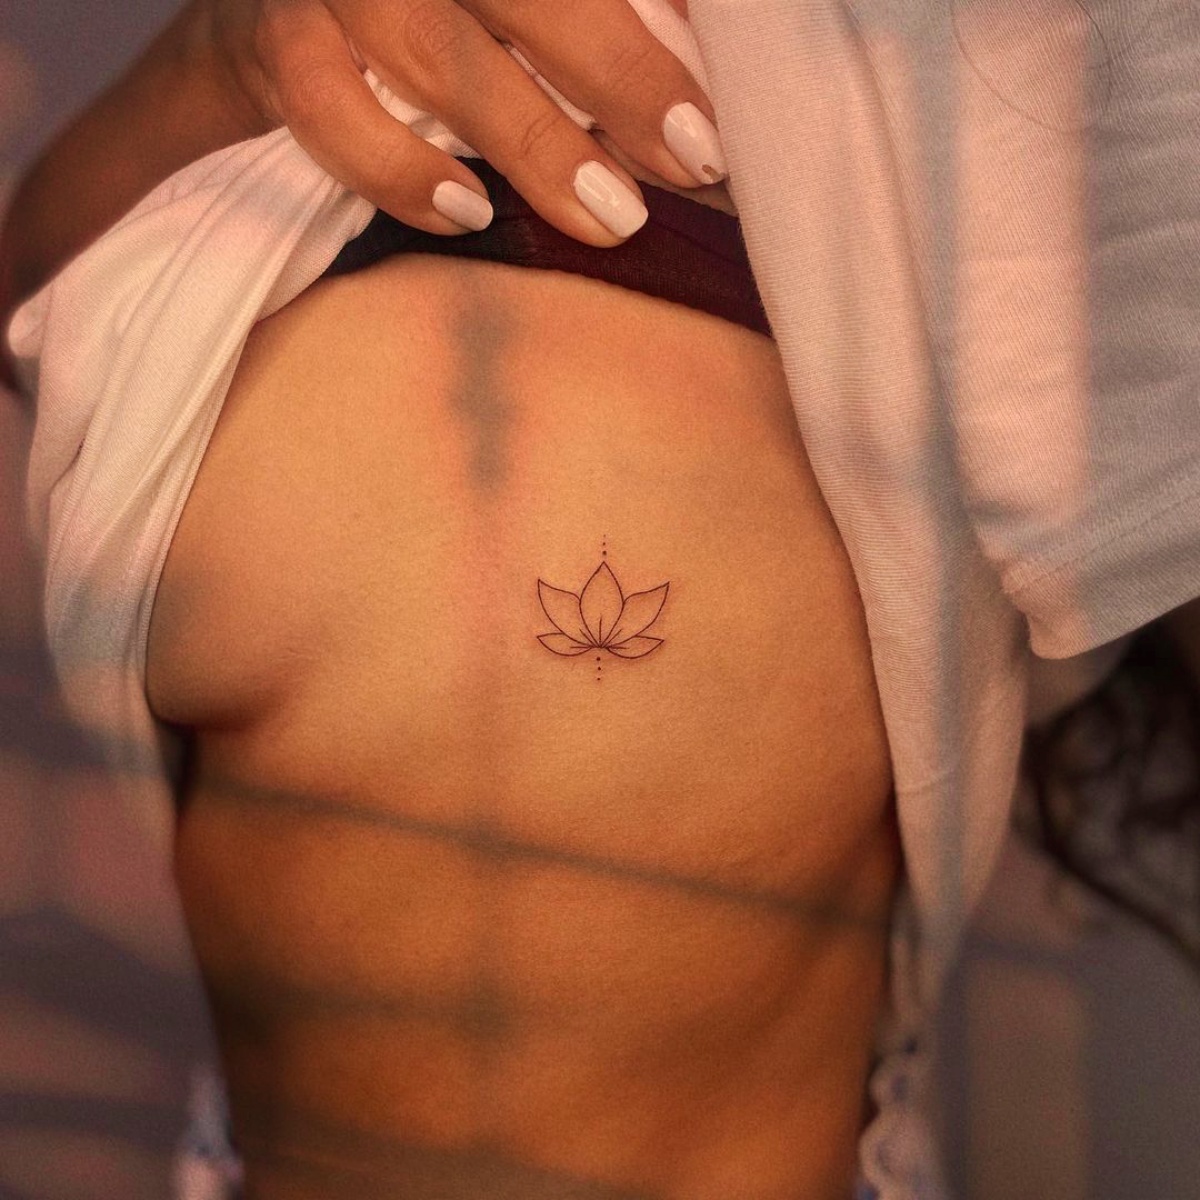 piccolo tatuaggio fiore di loto sulla pancia